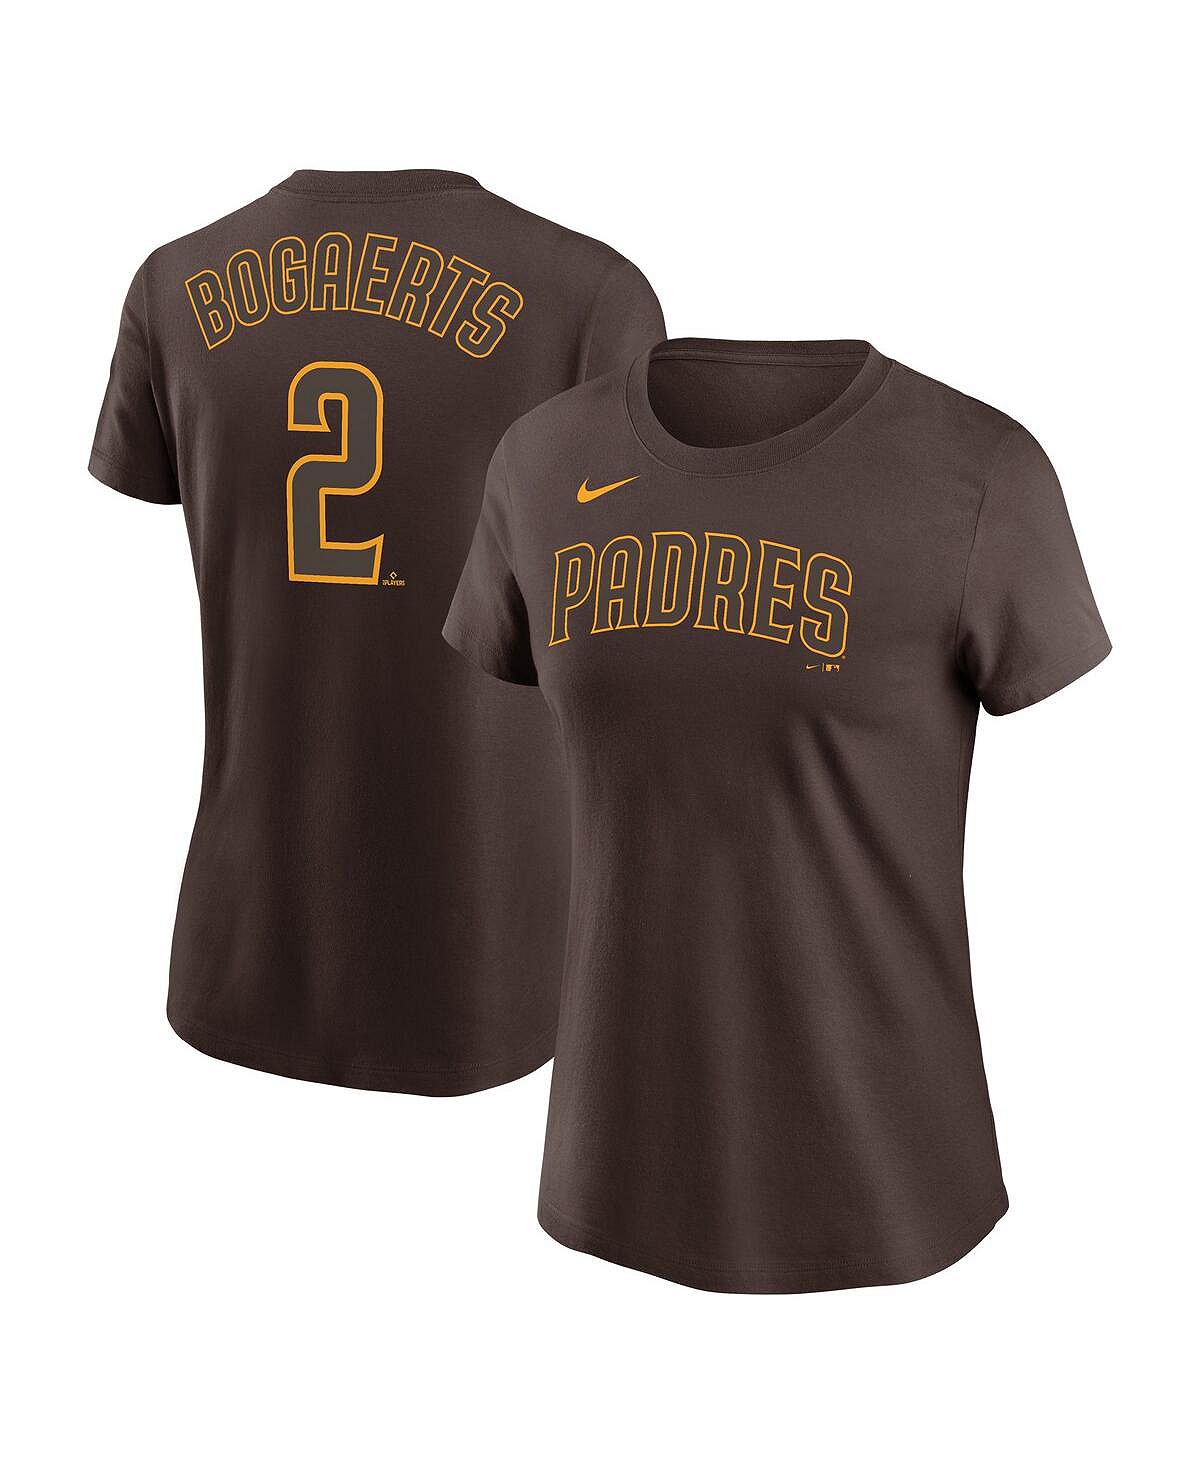 Женская футболка xander bogaerts brown san diego padres с именем и номером Nike, коричневый